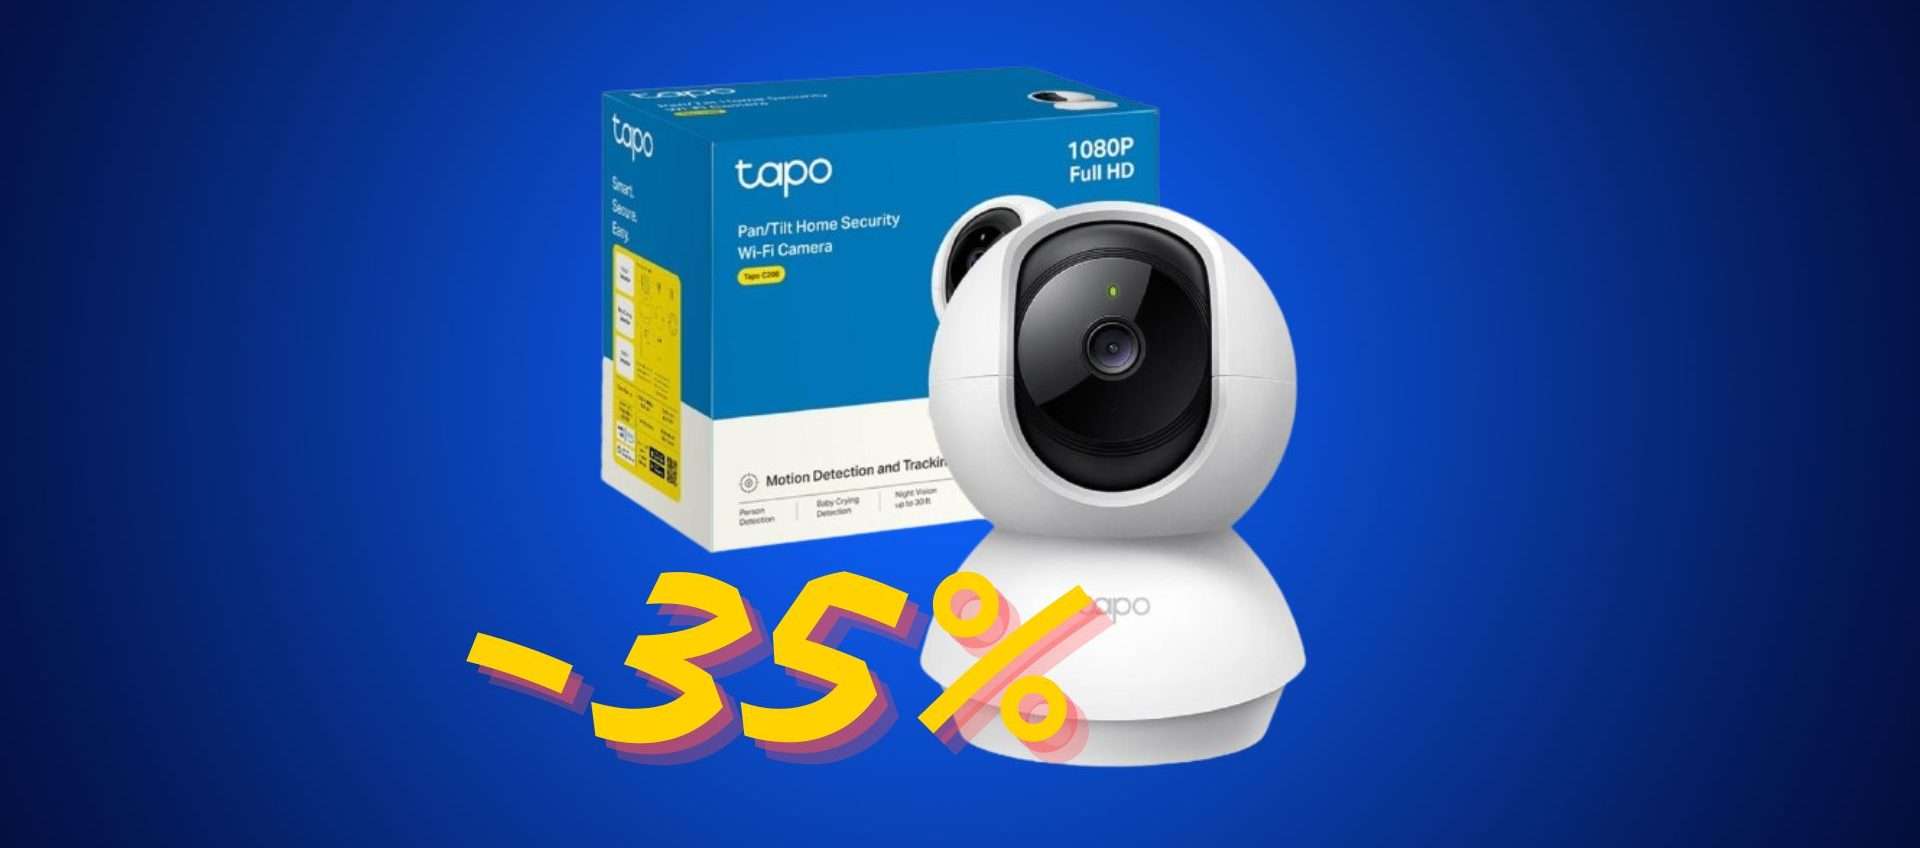 Telecamera di sicurezza Tapo C200: oggi è in offerta a 25,99€ (-35%)